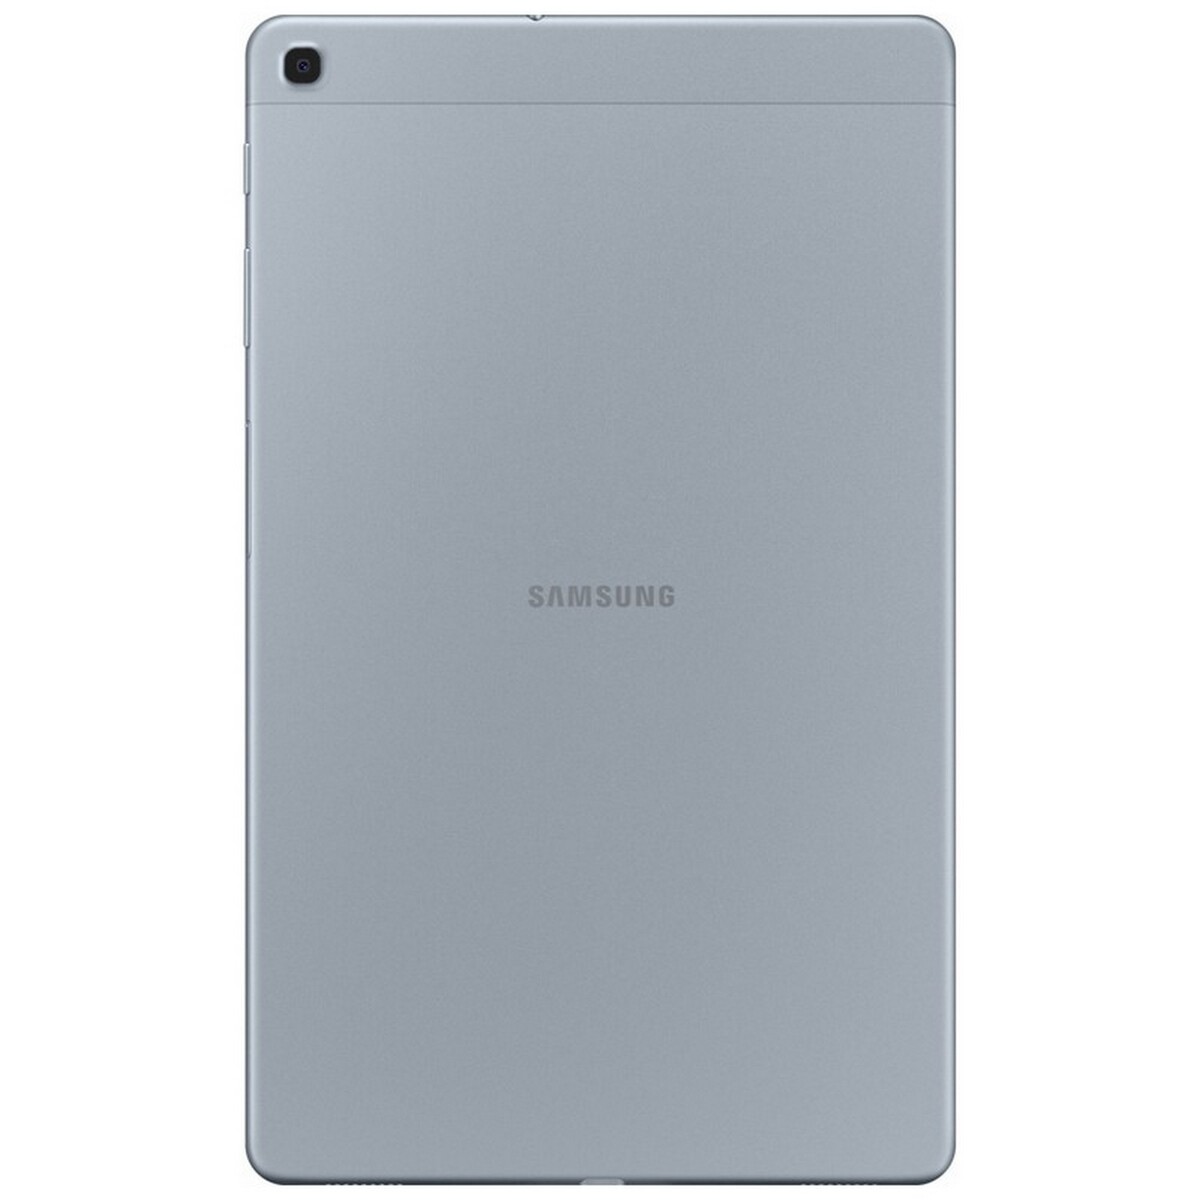 Samsung Galaxy Tab T515 10.1" Silver